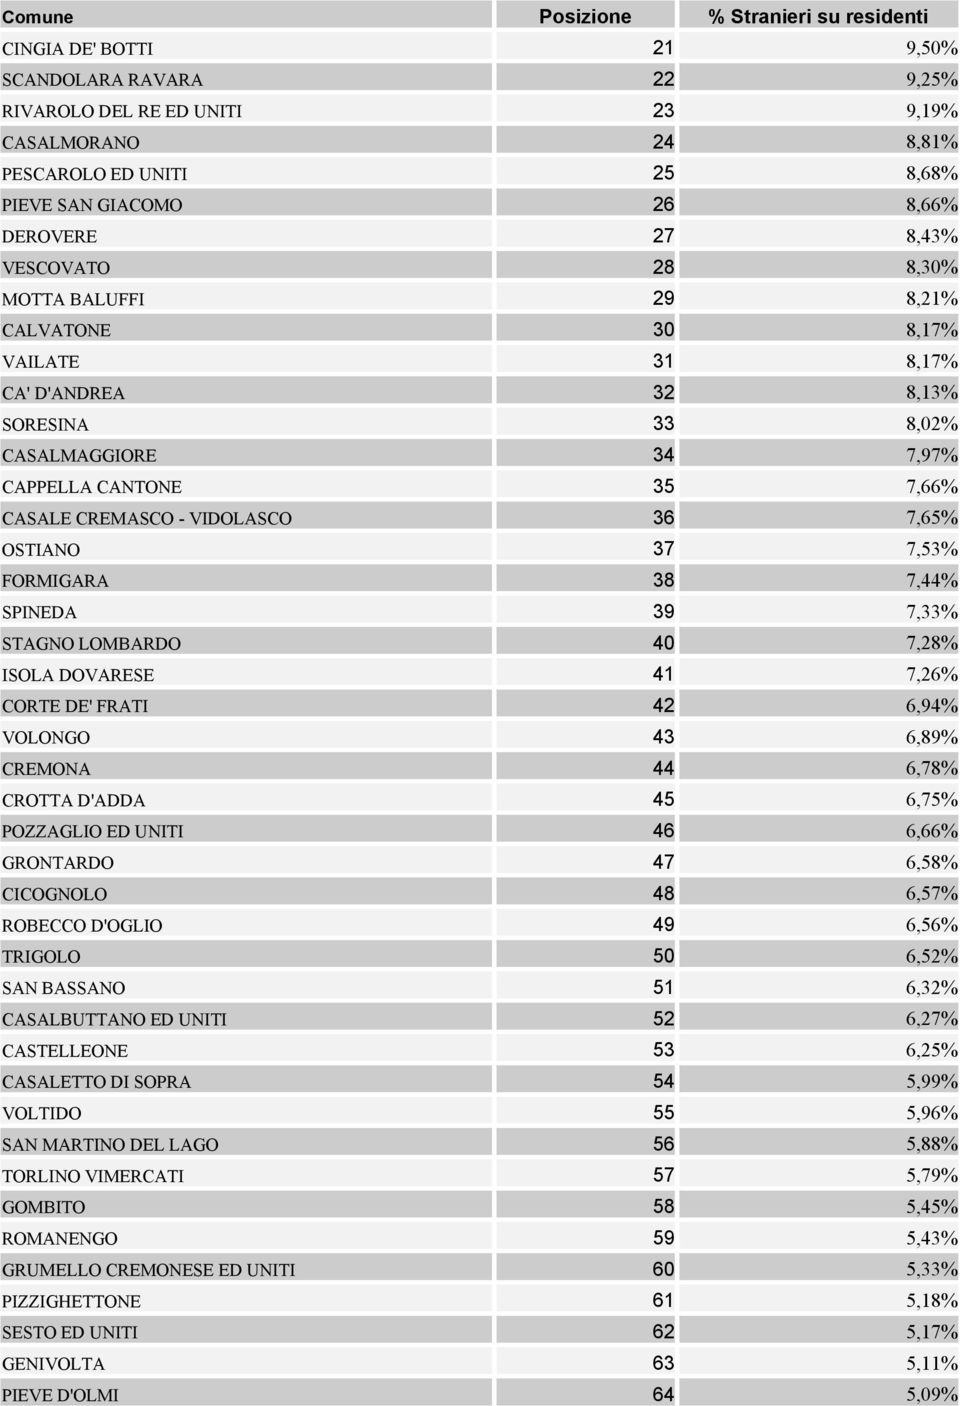 CREMASCO - VIDOLASCO 36 7,65% OSTIANO 37 7,53% FORMIGARA 38 7,44% SPINEDA 39 7,33% STAGNO LOMBARDO 40 7,28% ISOLA DOVARESE 41 7,26% CORTE DE' FRATI 42 6,94% VOLONGO 43 6,89% CREMONA 44 6,78% CROTTA